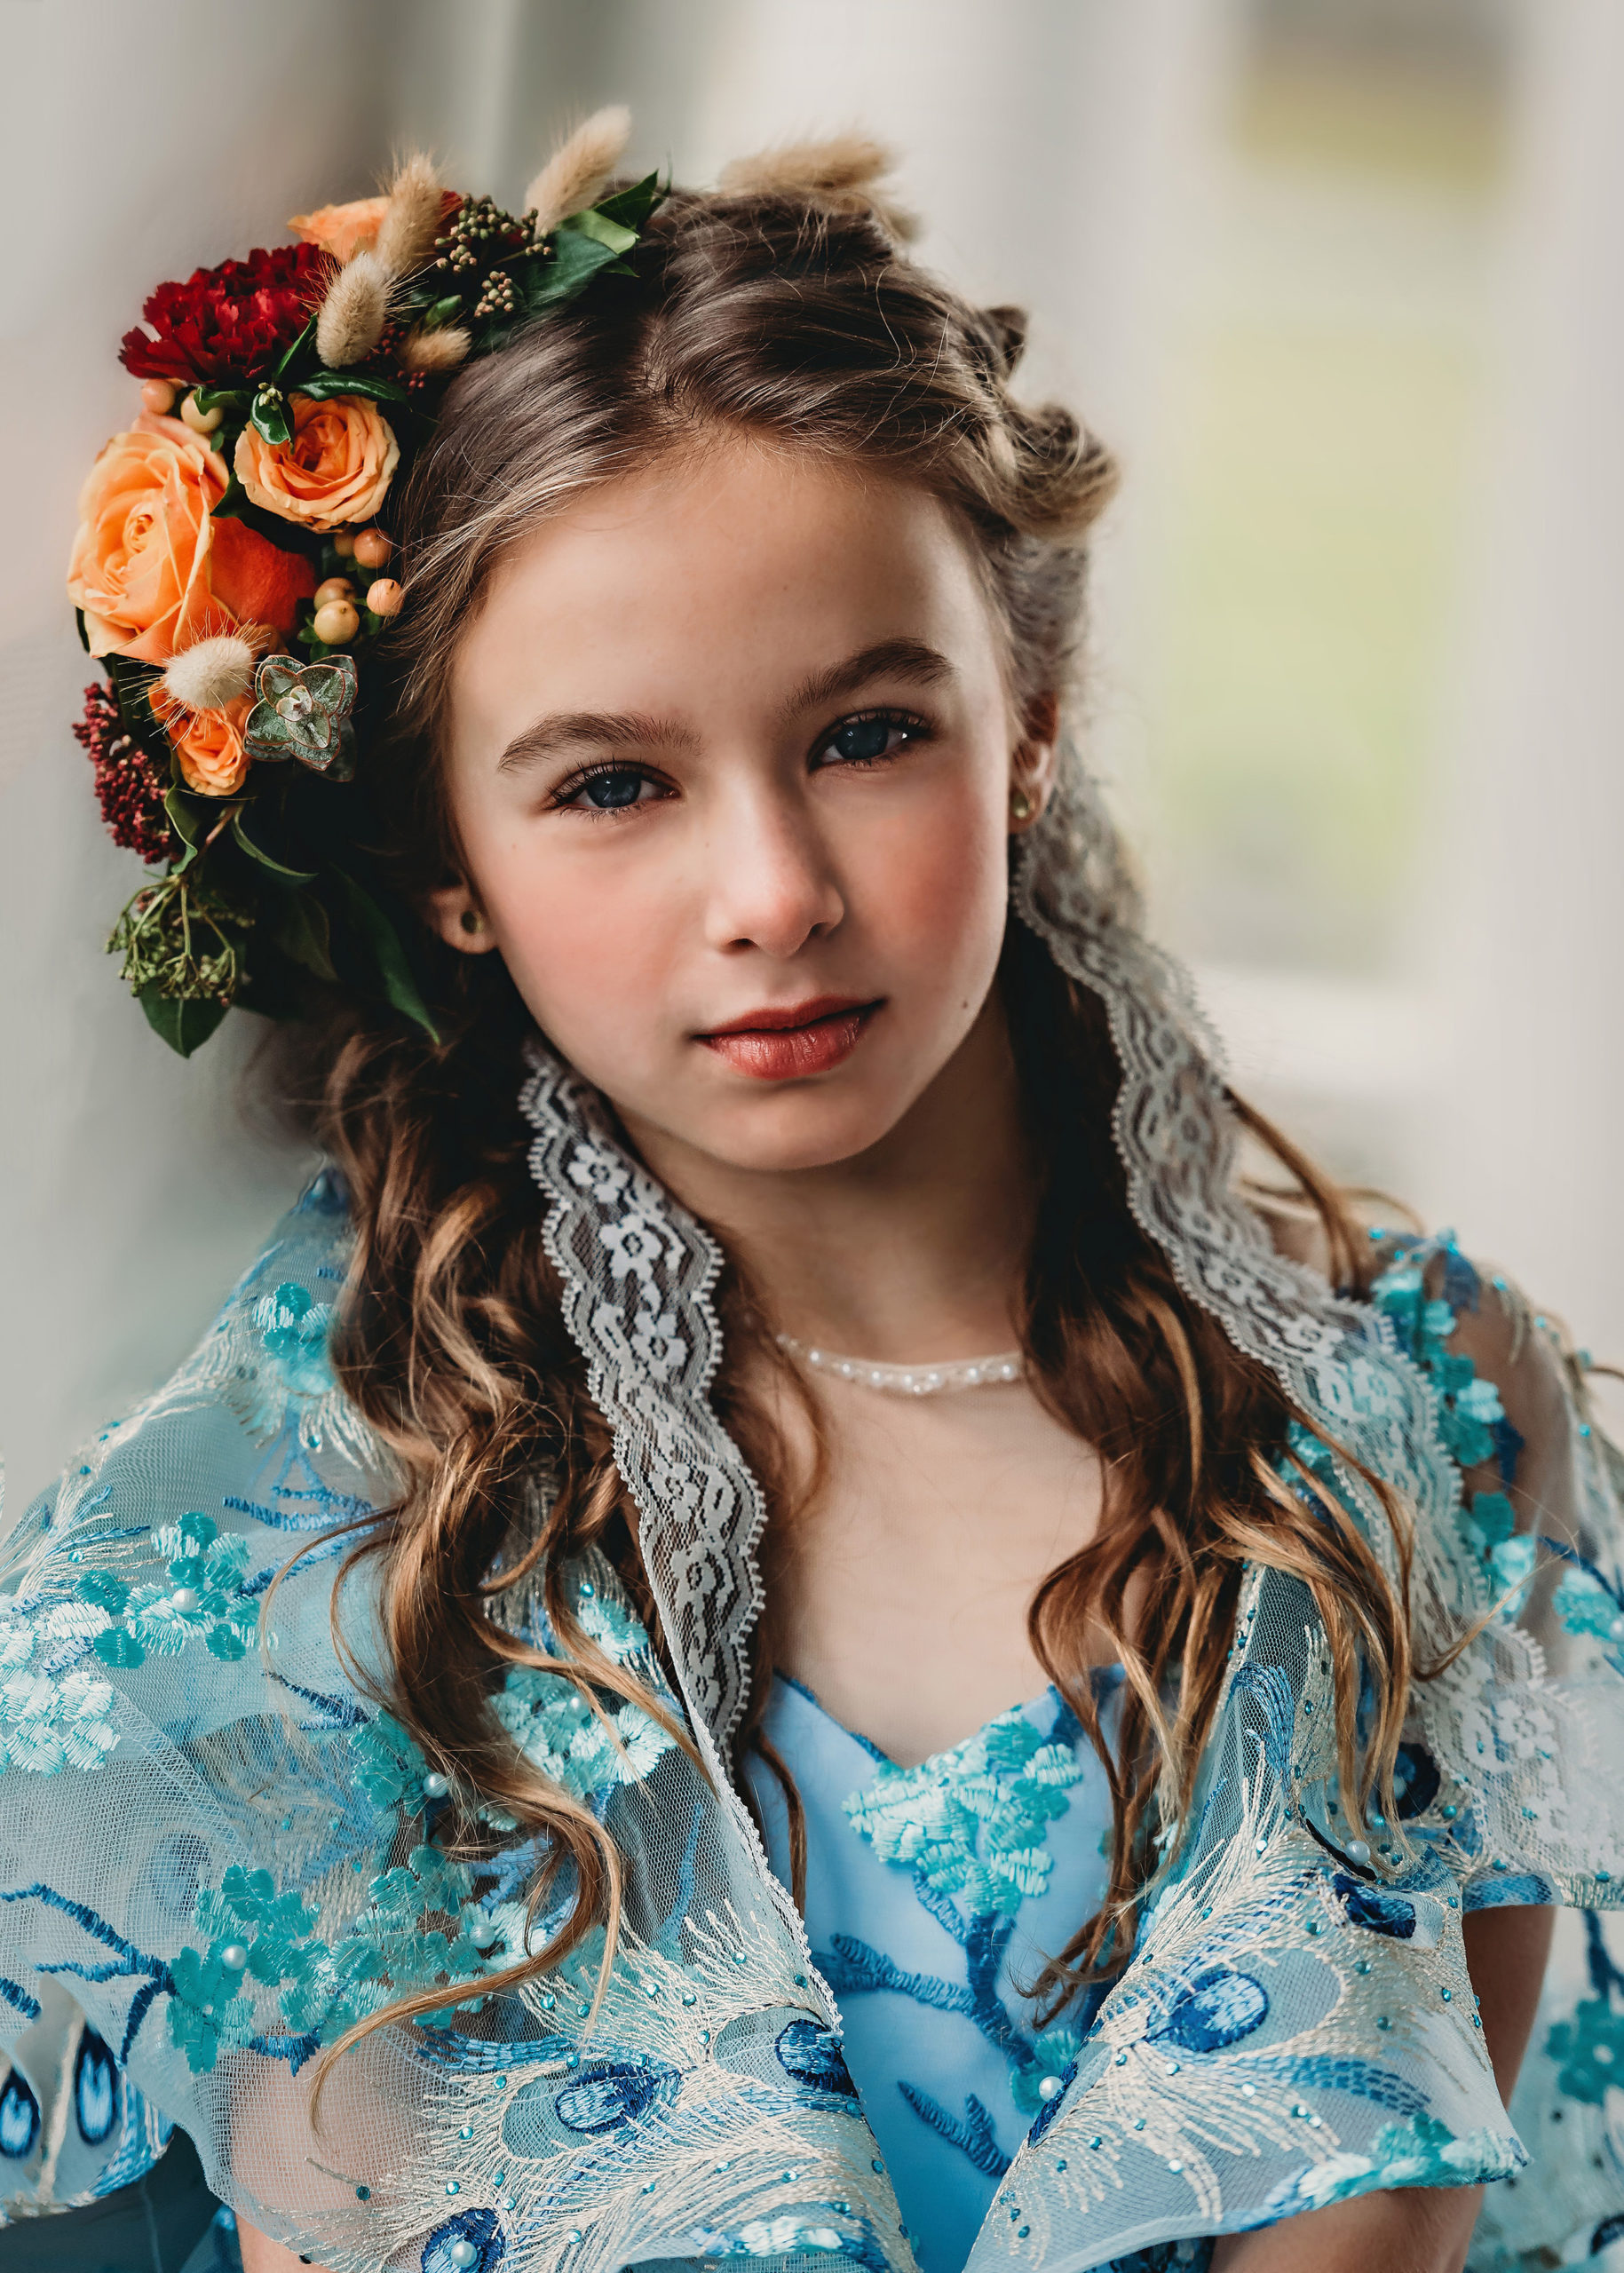 Couture Child Portraits Princess Session Skagit Fine Art